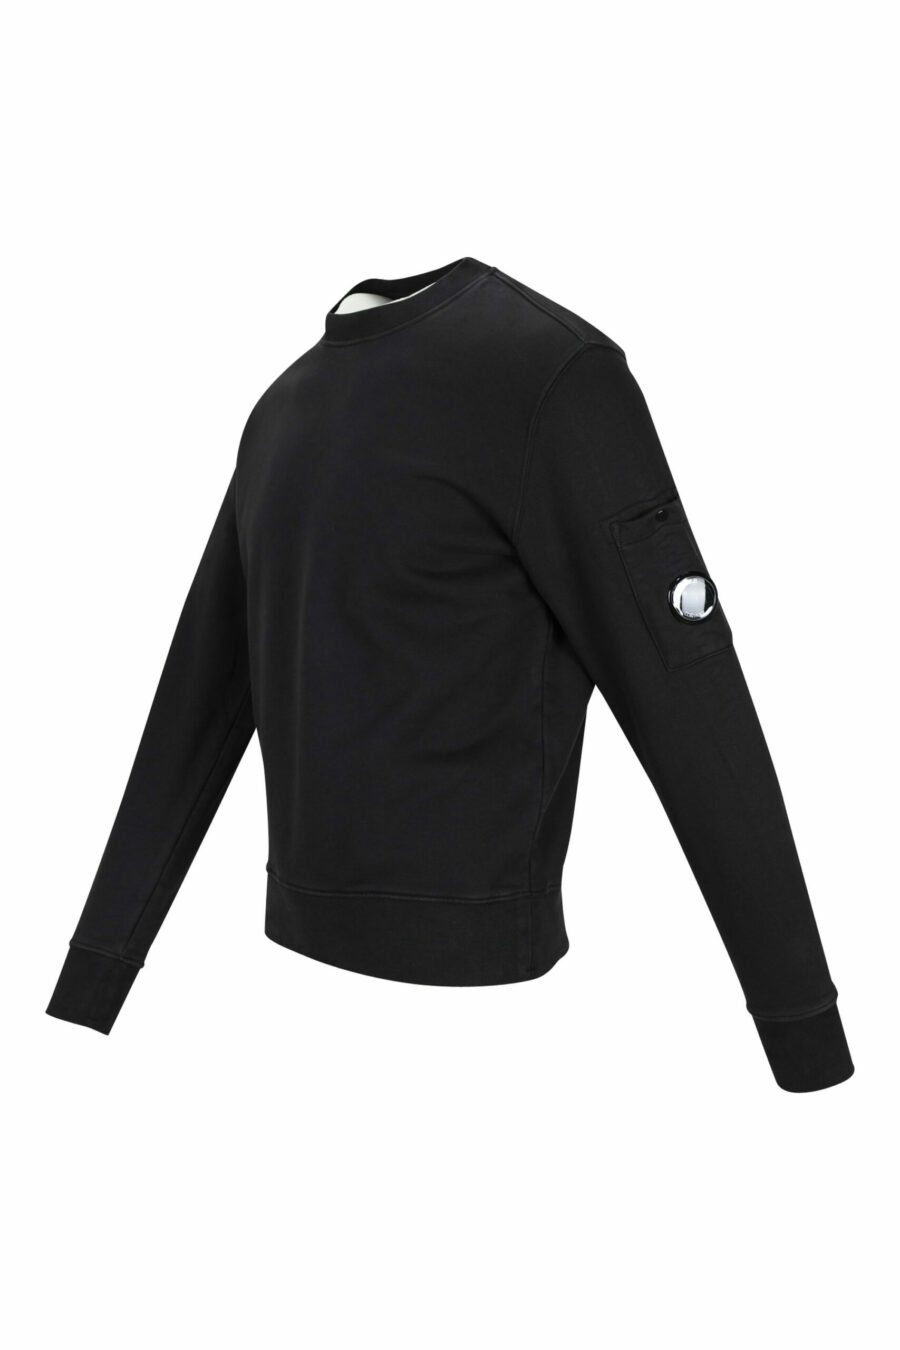 Schwarzes Sweatshirt mit seitlicher Logolinse - 7620943598650 1 skaliert